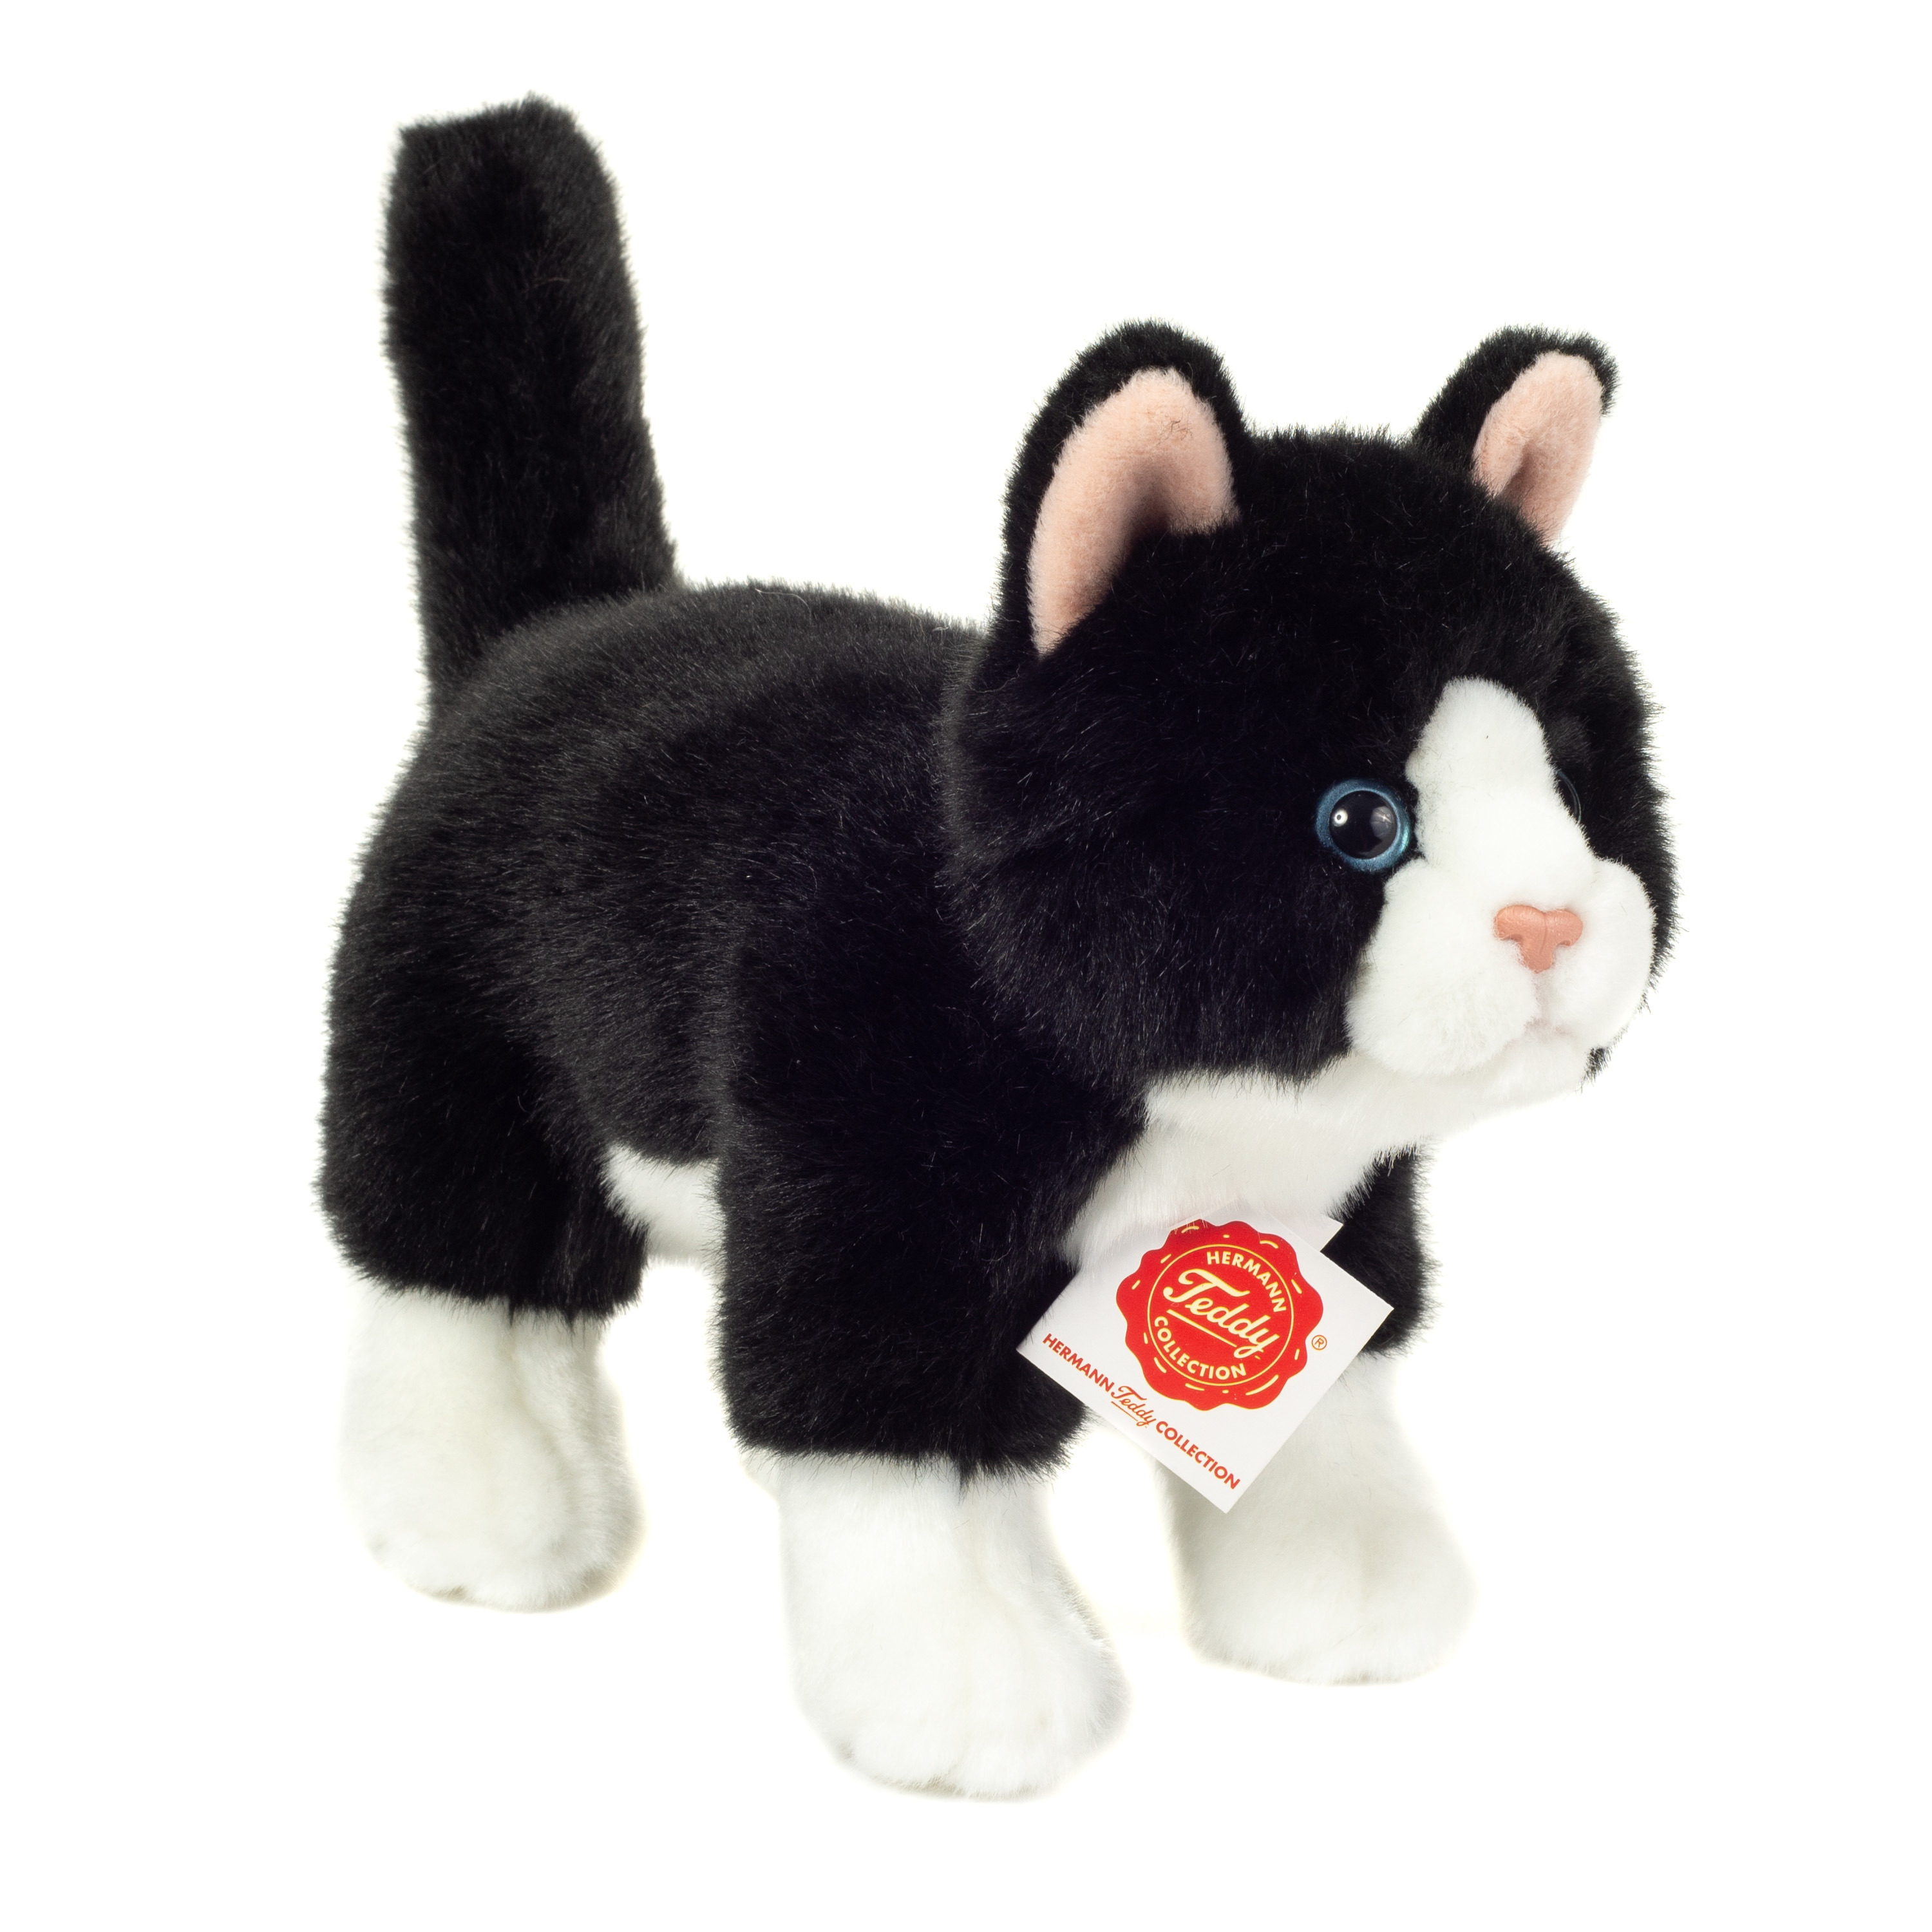 Knuffeldier kat-poes zachte pluche stof premium kwaliteit knuffels zwart-wit 20 cm